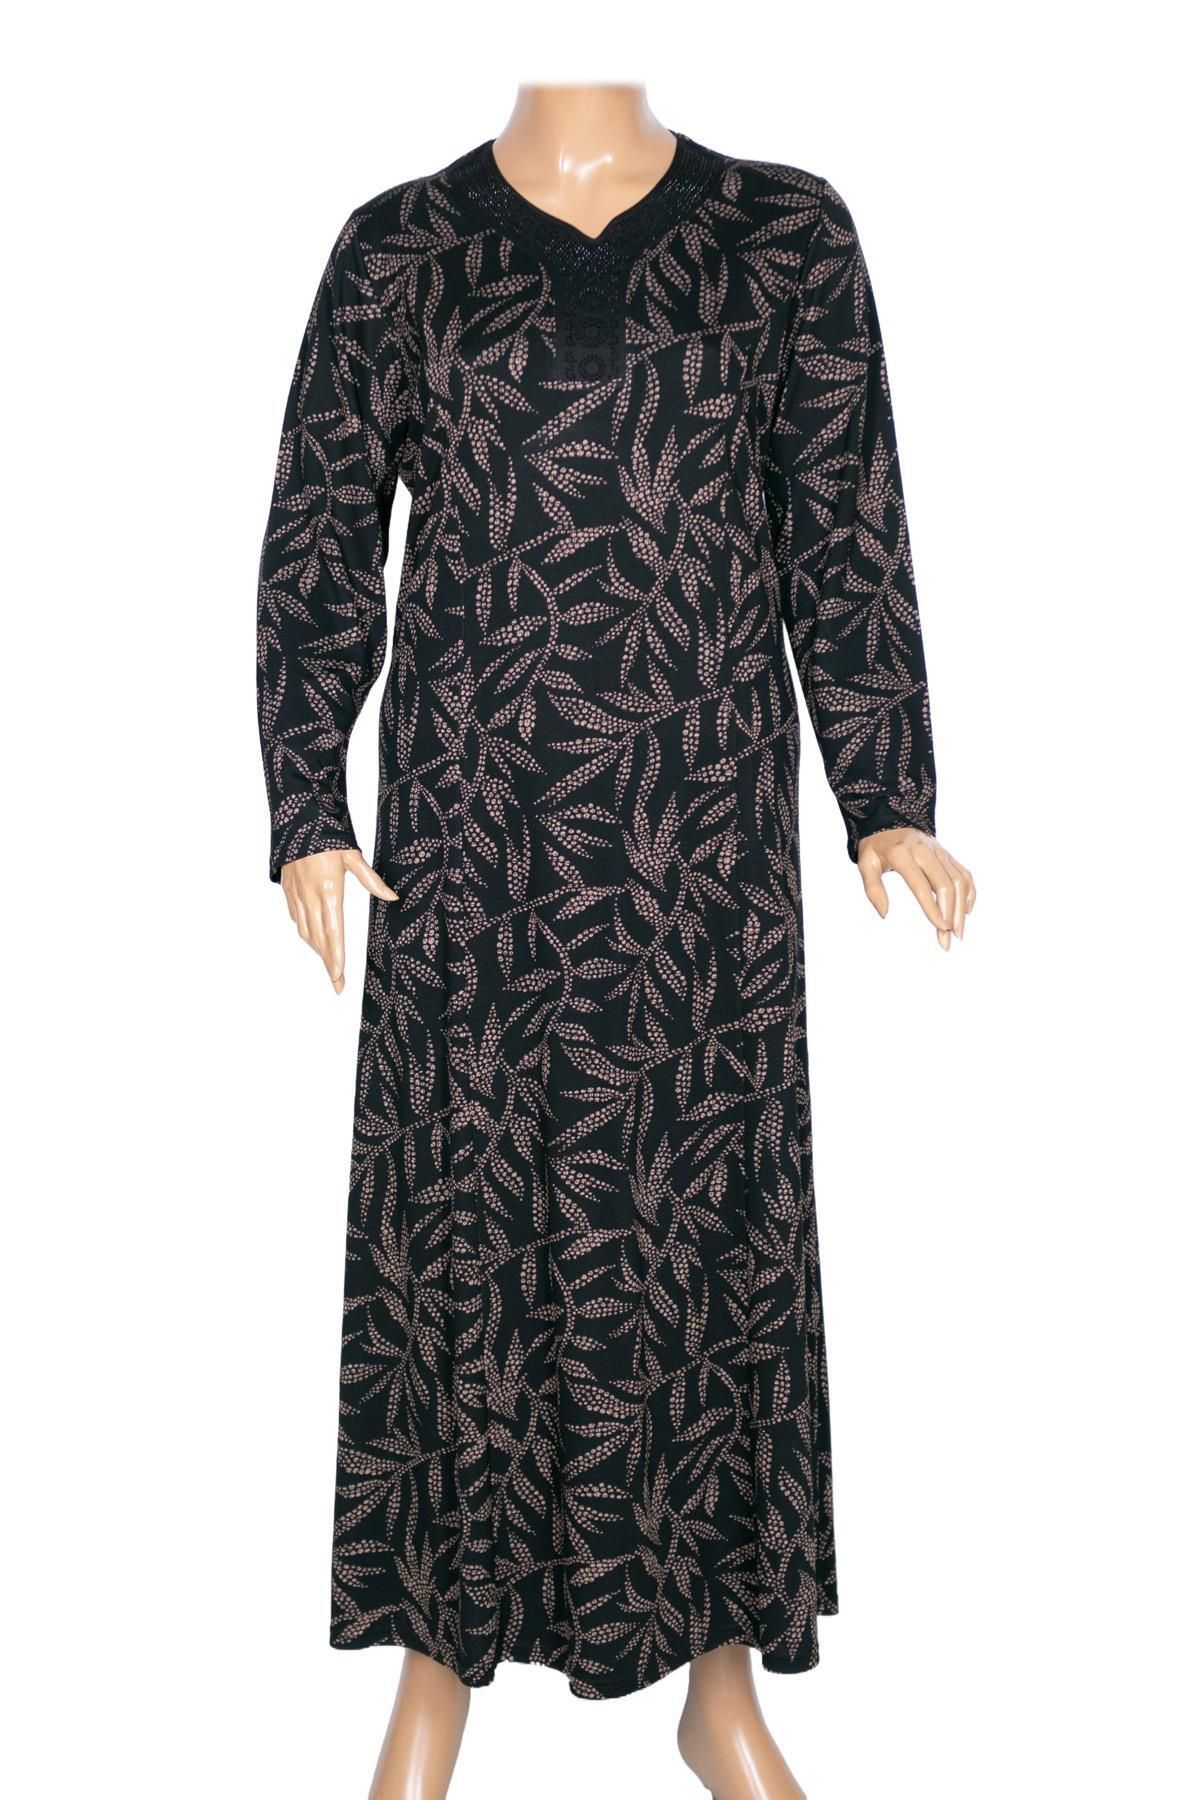 HESNA Kadın Demet Kuplu Boydan Kum Yaprak Desen Siyah Elbise